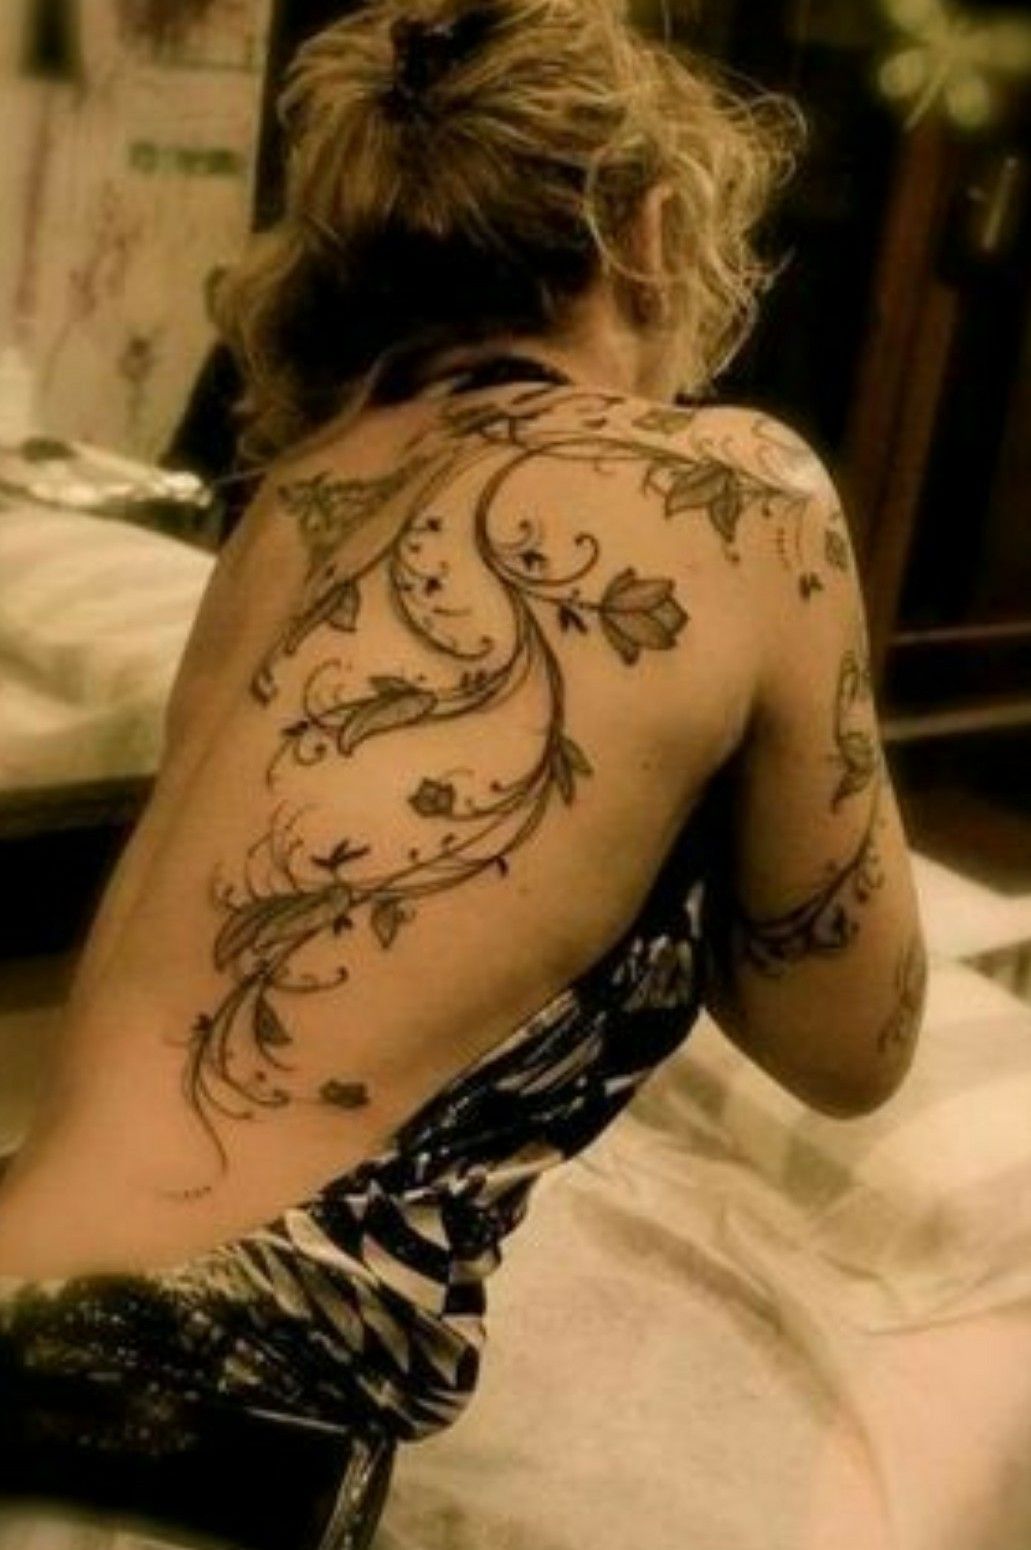 Tattoo uploaded by Holly Smith • Tattoodo